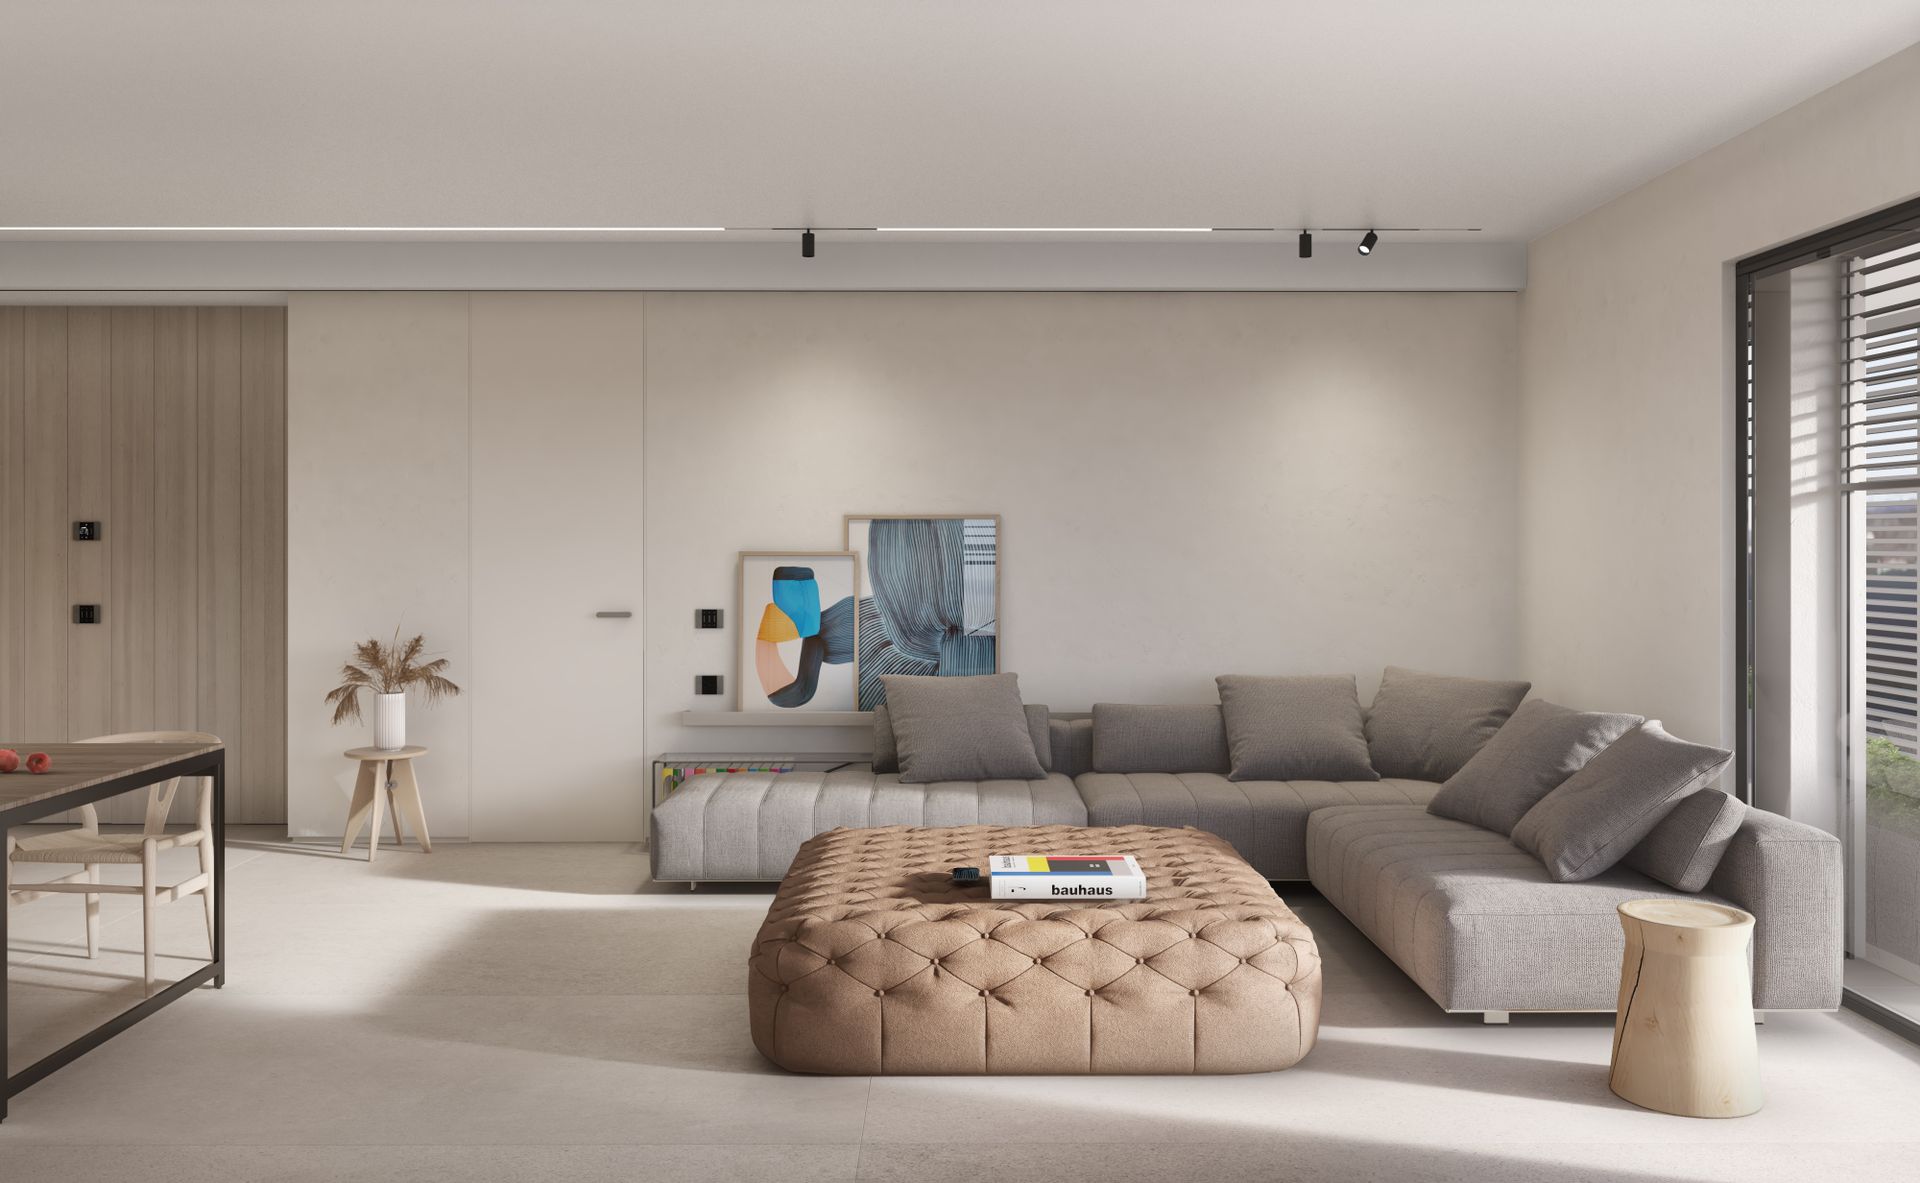 New apartment project, single-family house, convivium kitchen block, Ceppo di Grè. Officina Magisafi architecture design - living room rendering